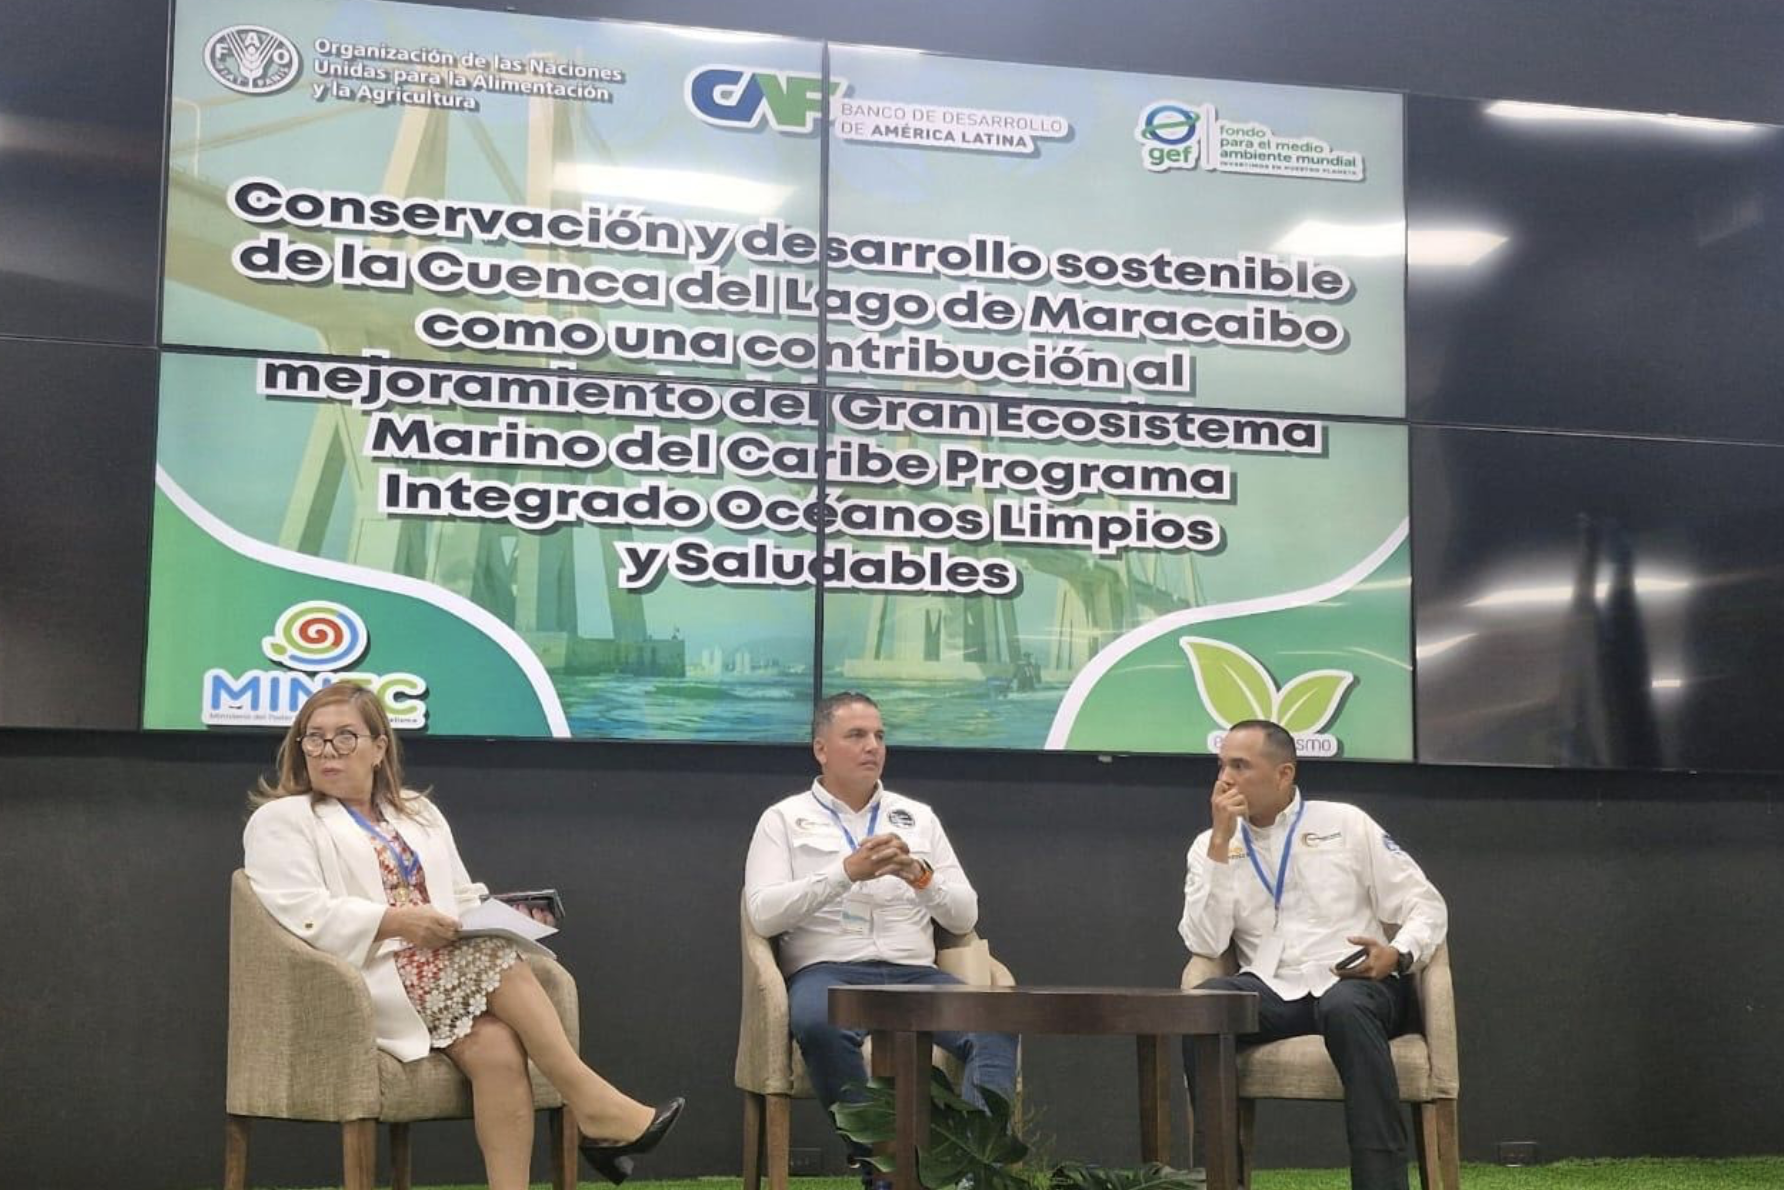 CAF promueve conservación y desarrollo sostenible de lago de Maracaibo